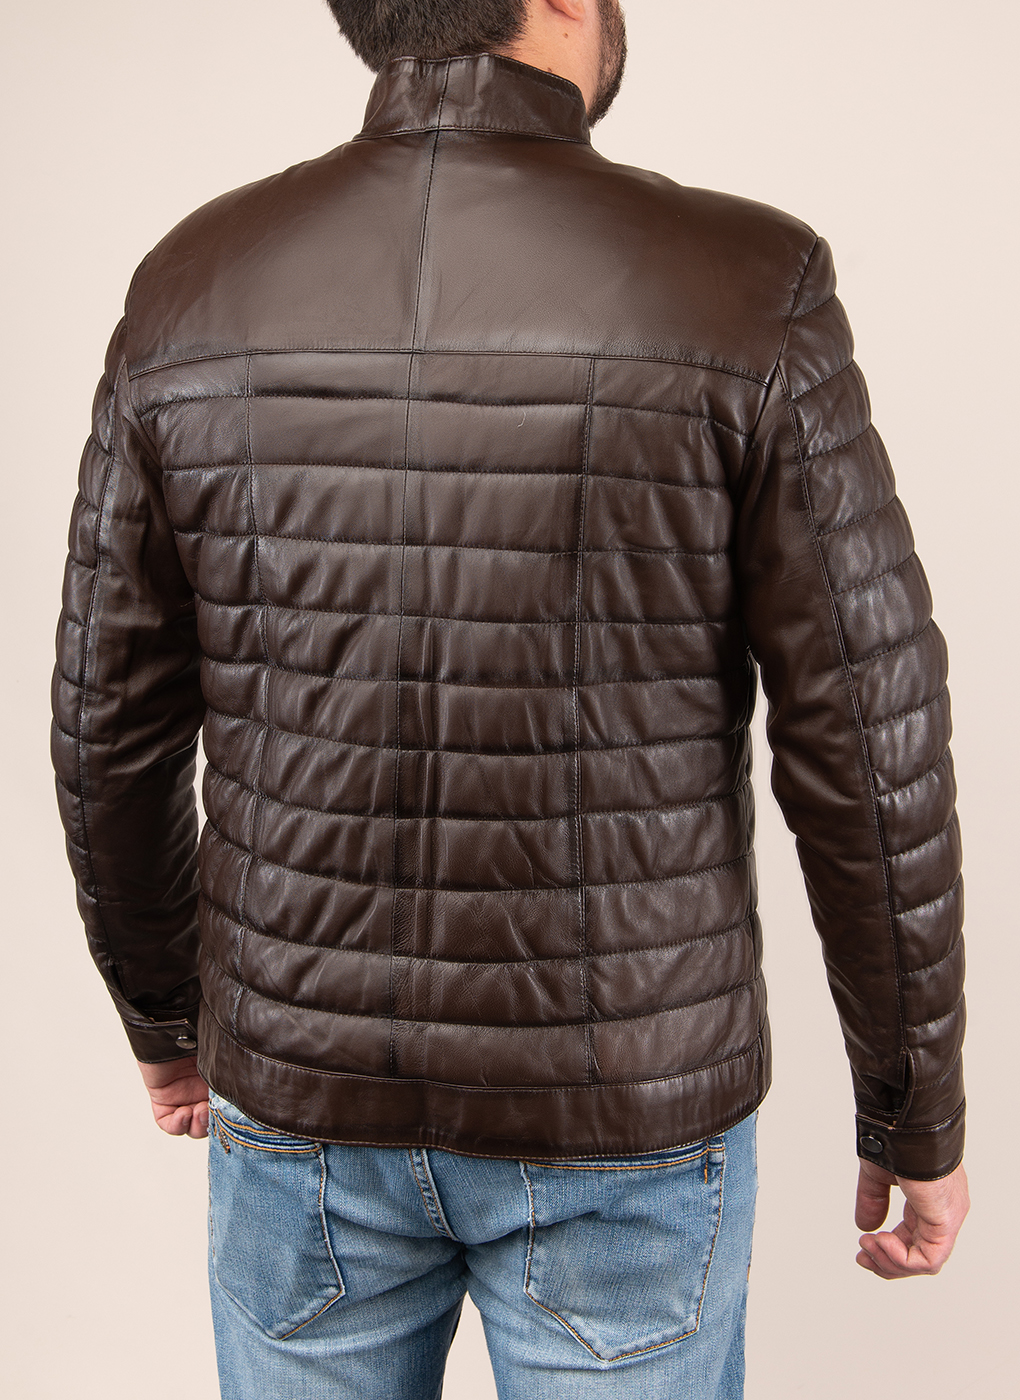 Кожаная куртка мужская Каляев 49113 коричневая 48 RU